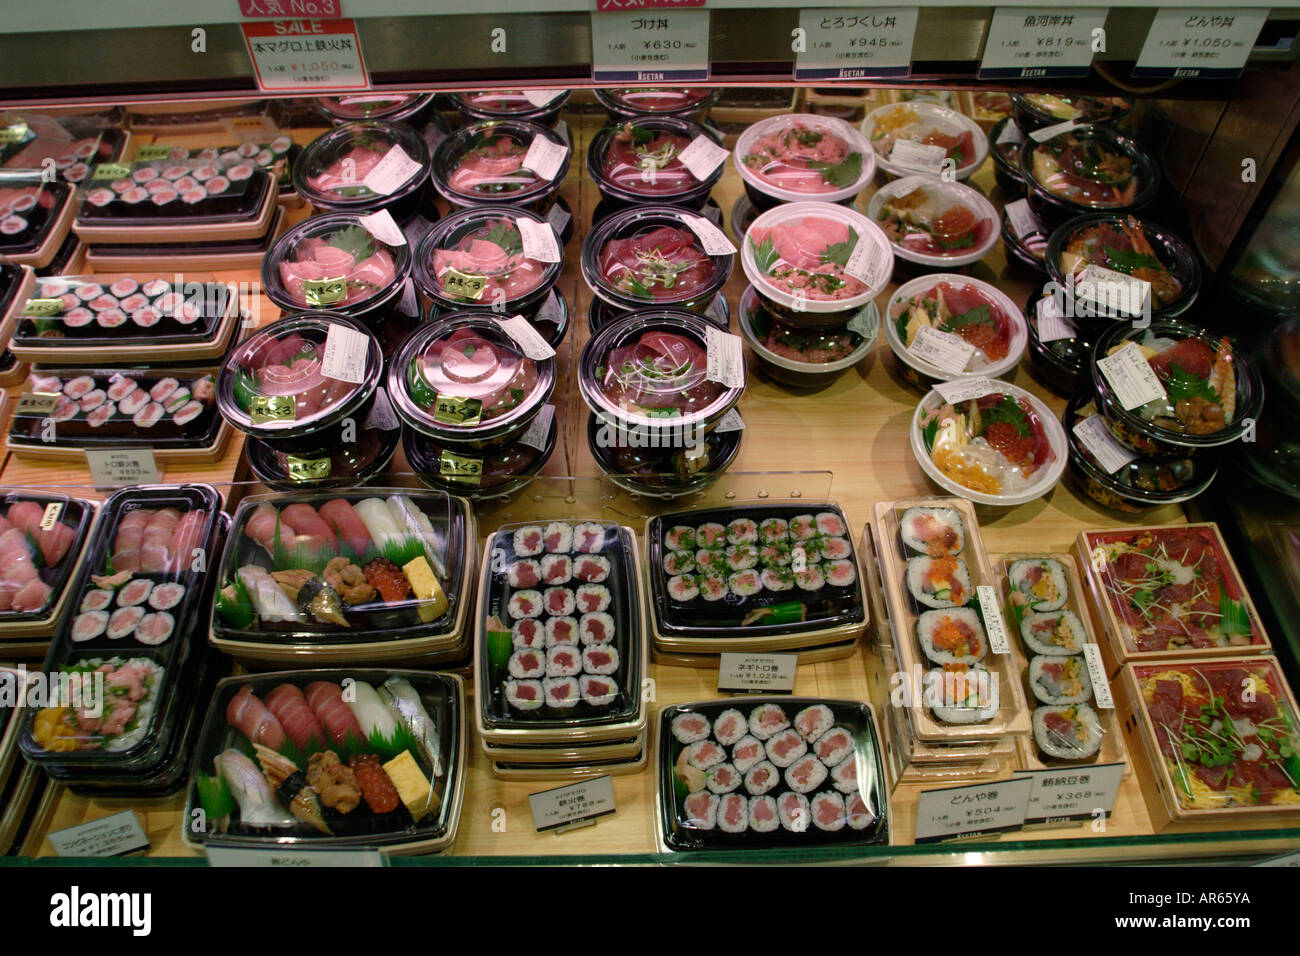 Magasin Isetan, food hall dans le sous-sol, du poisson, de l'Est krilo jesenice Shinjuku, Tokyo, Japon Banque D'Images